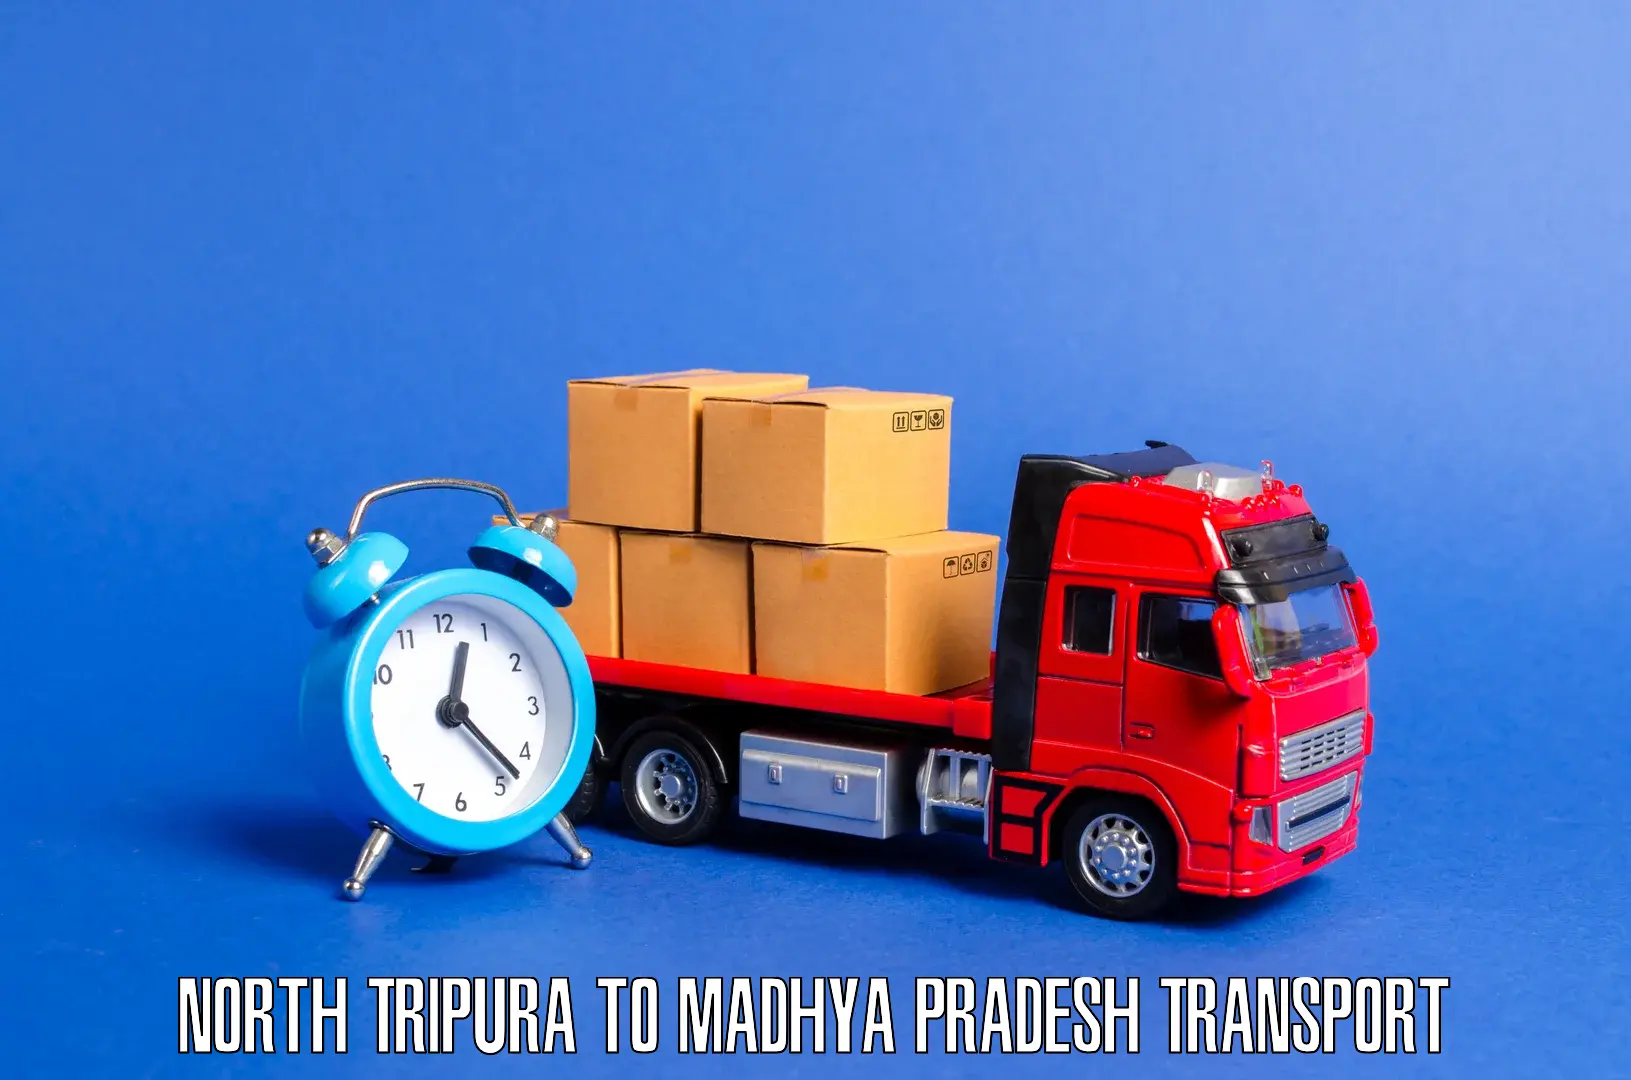 Cargo train transport services North Tripura to Alirajpur